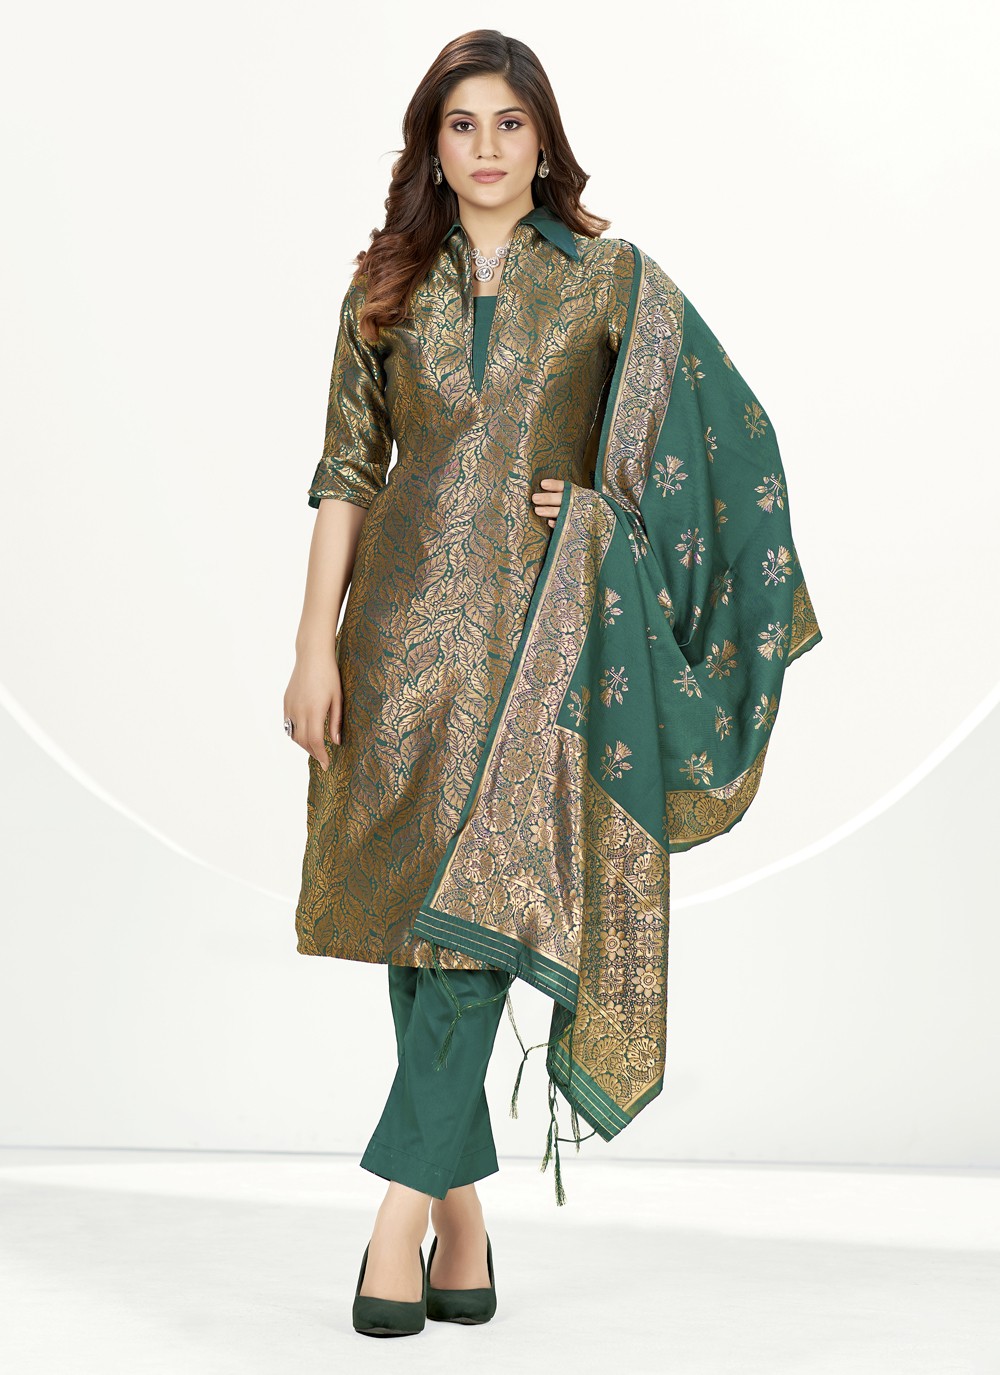 Suits colour | Indian designer suits, Indian designer outfits, Banarsi suit